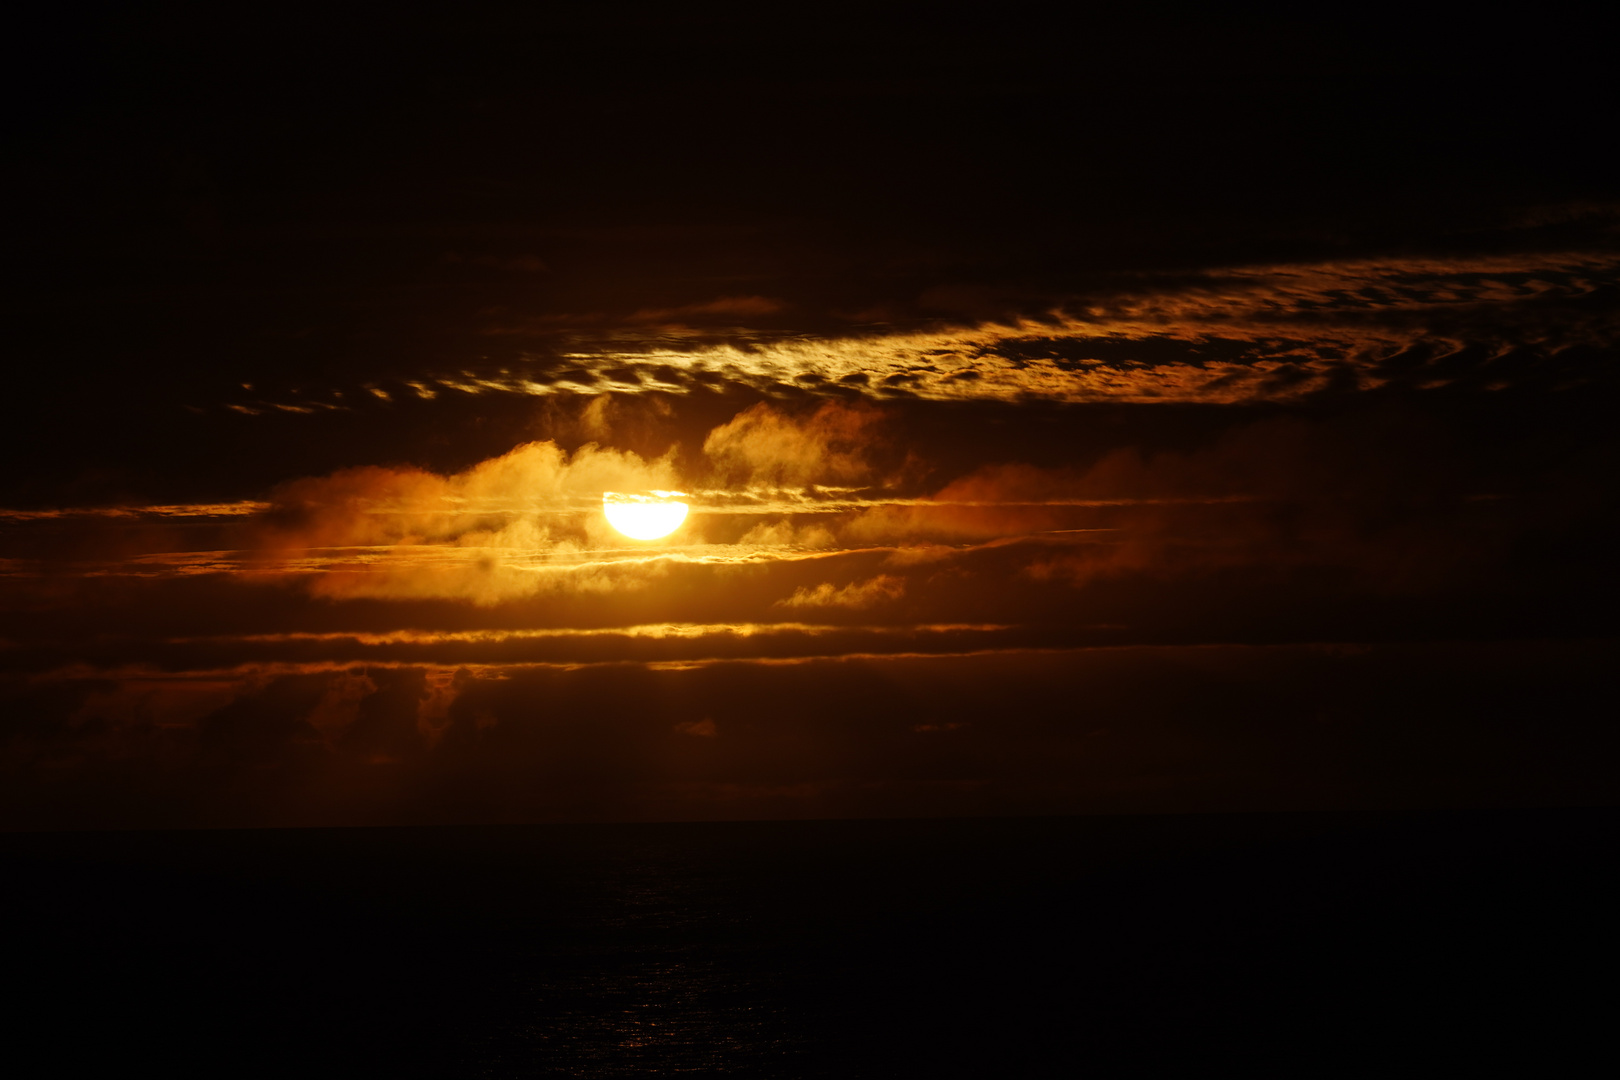 Sonnenaufgang im Atlantik